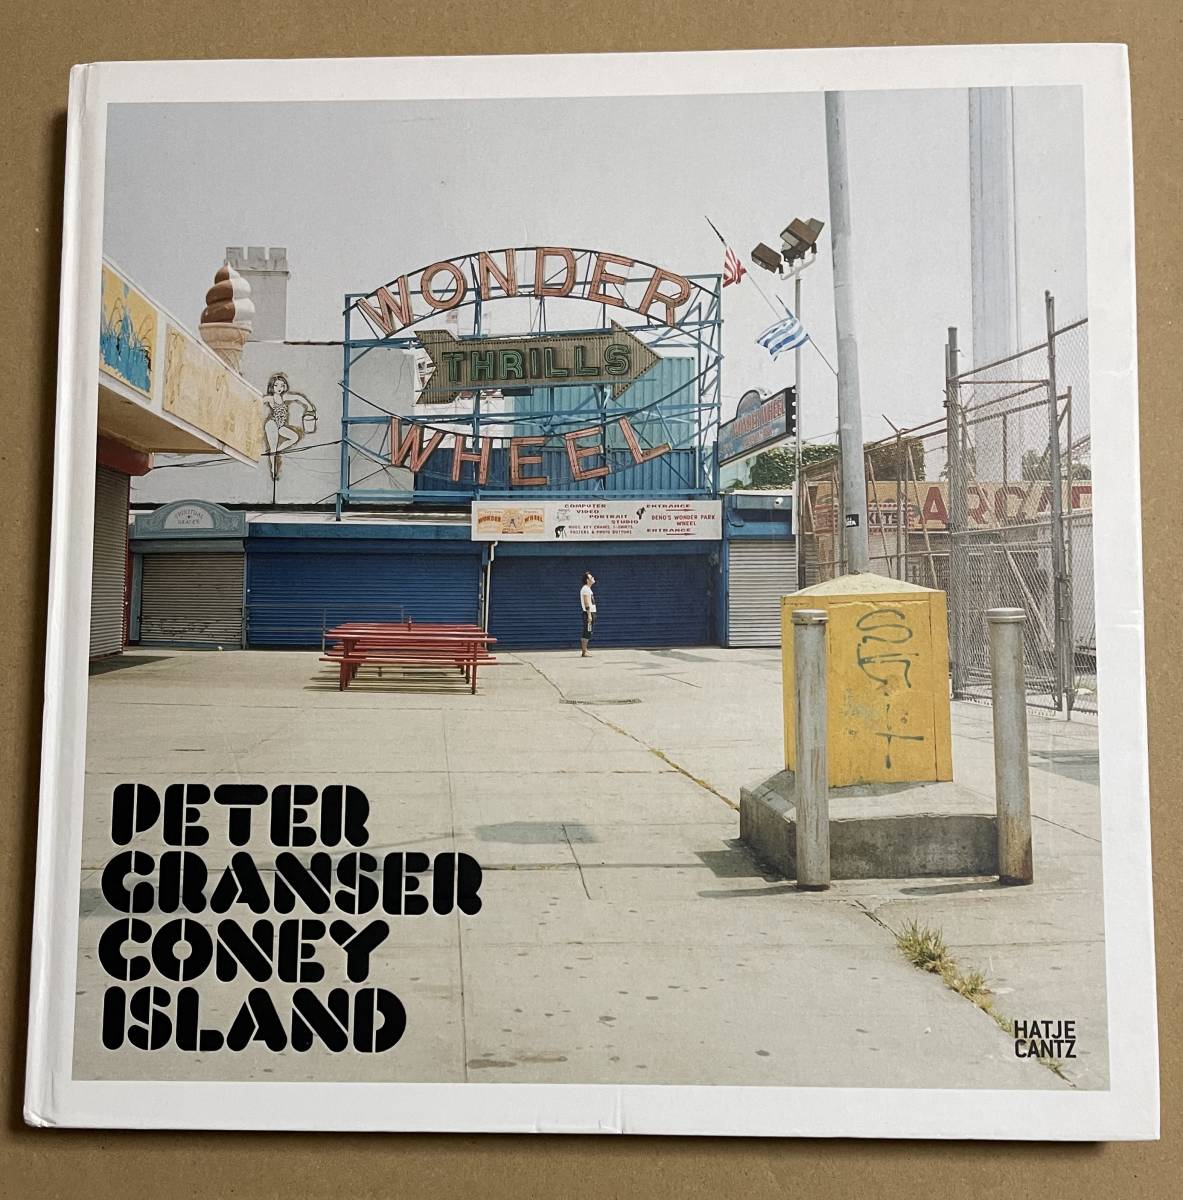 【ご予約品】 Peter Granser Coney Island　コニーアイランド ピーター・グランサー 写真集 アート写真